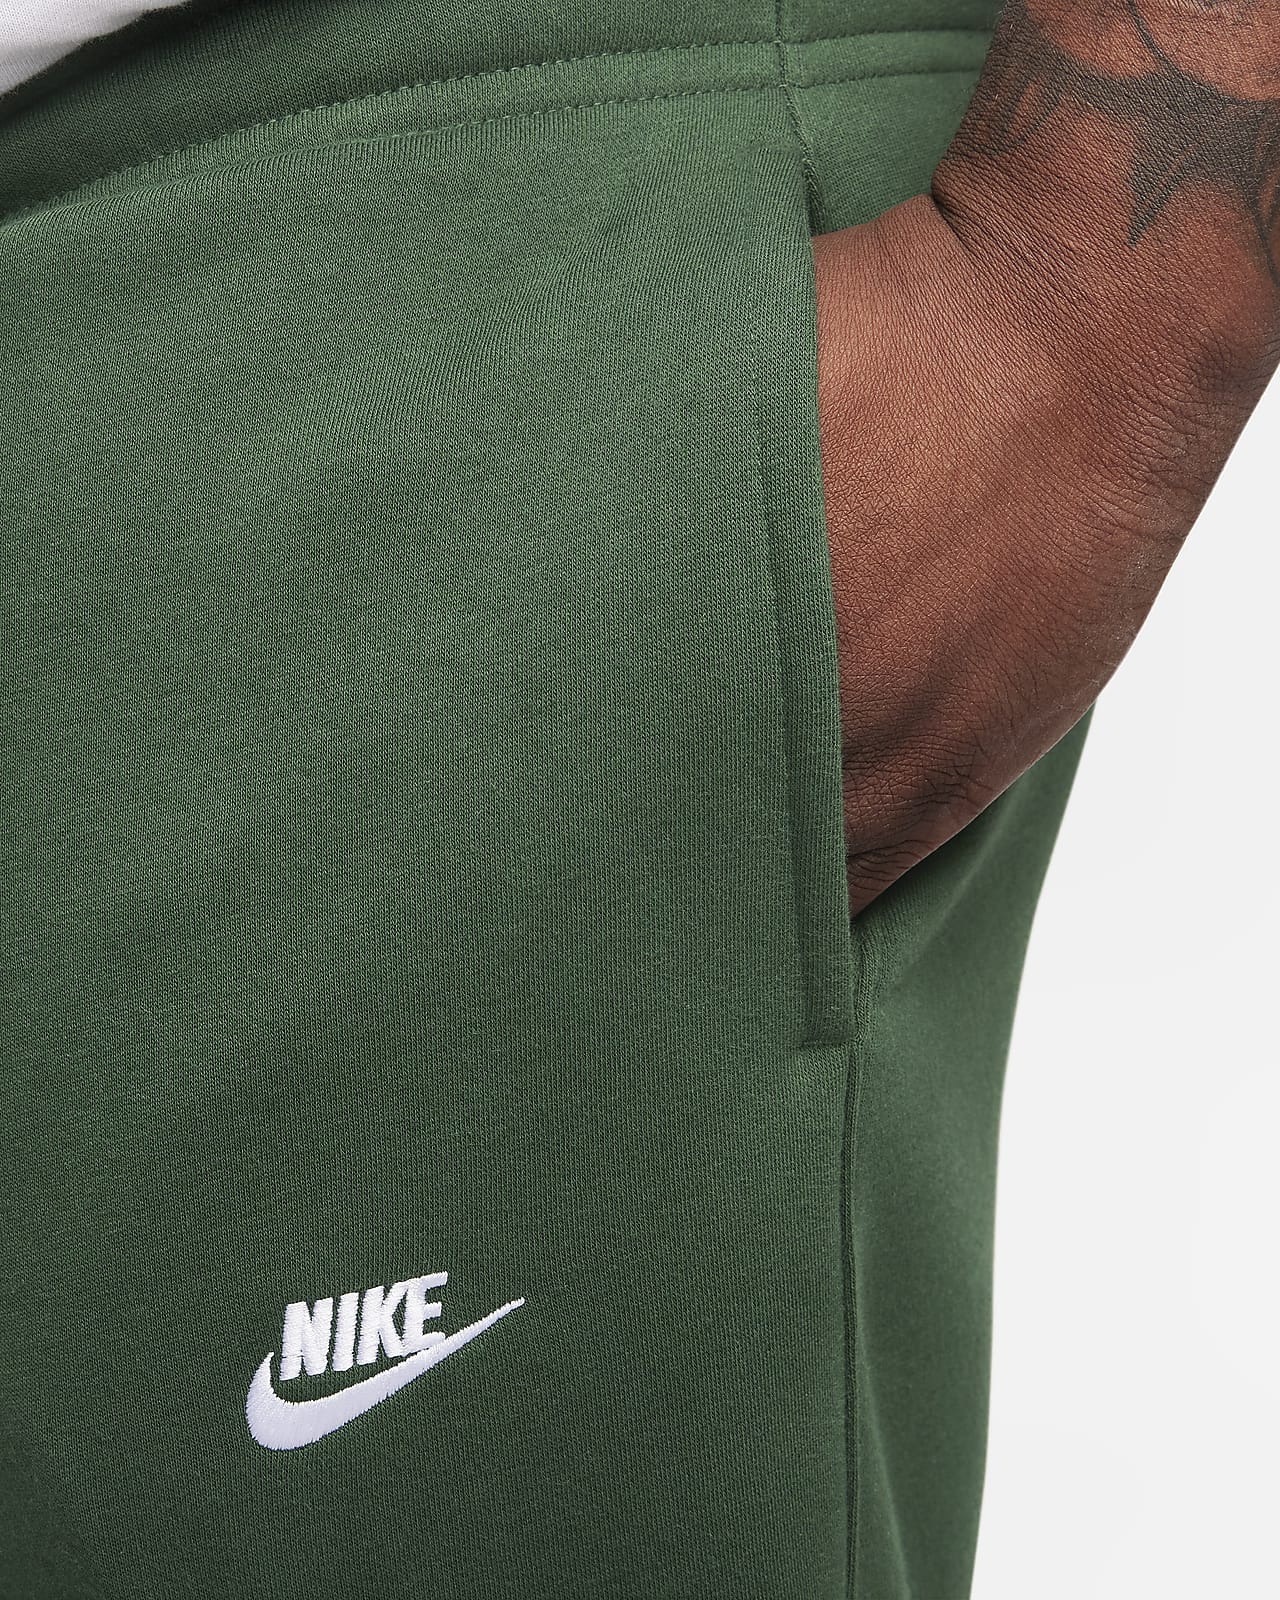 Sweat Nike pour homme Club Fleece, indémodable, coloris gris ou vert